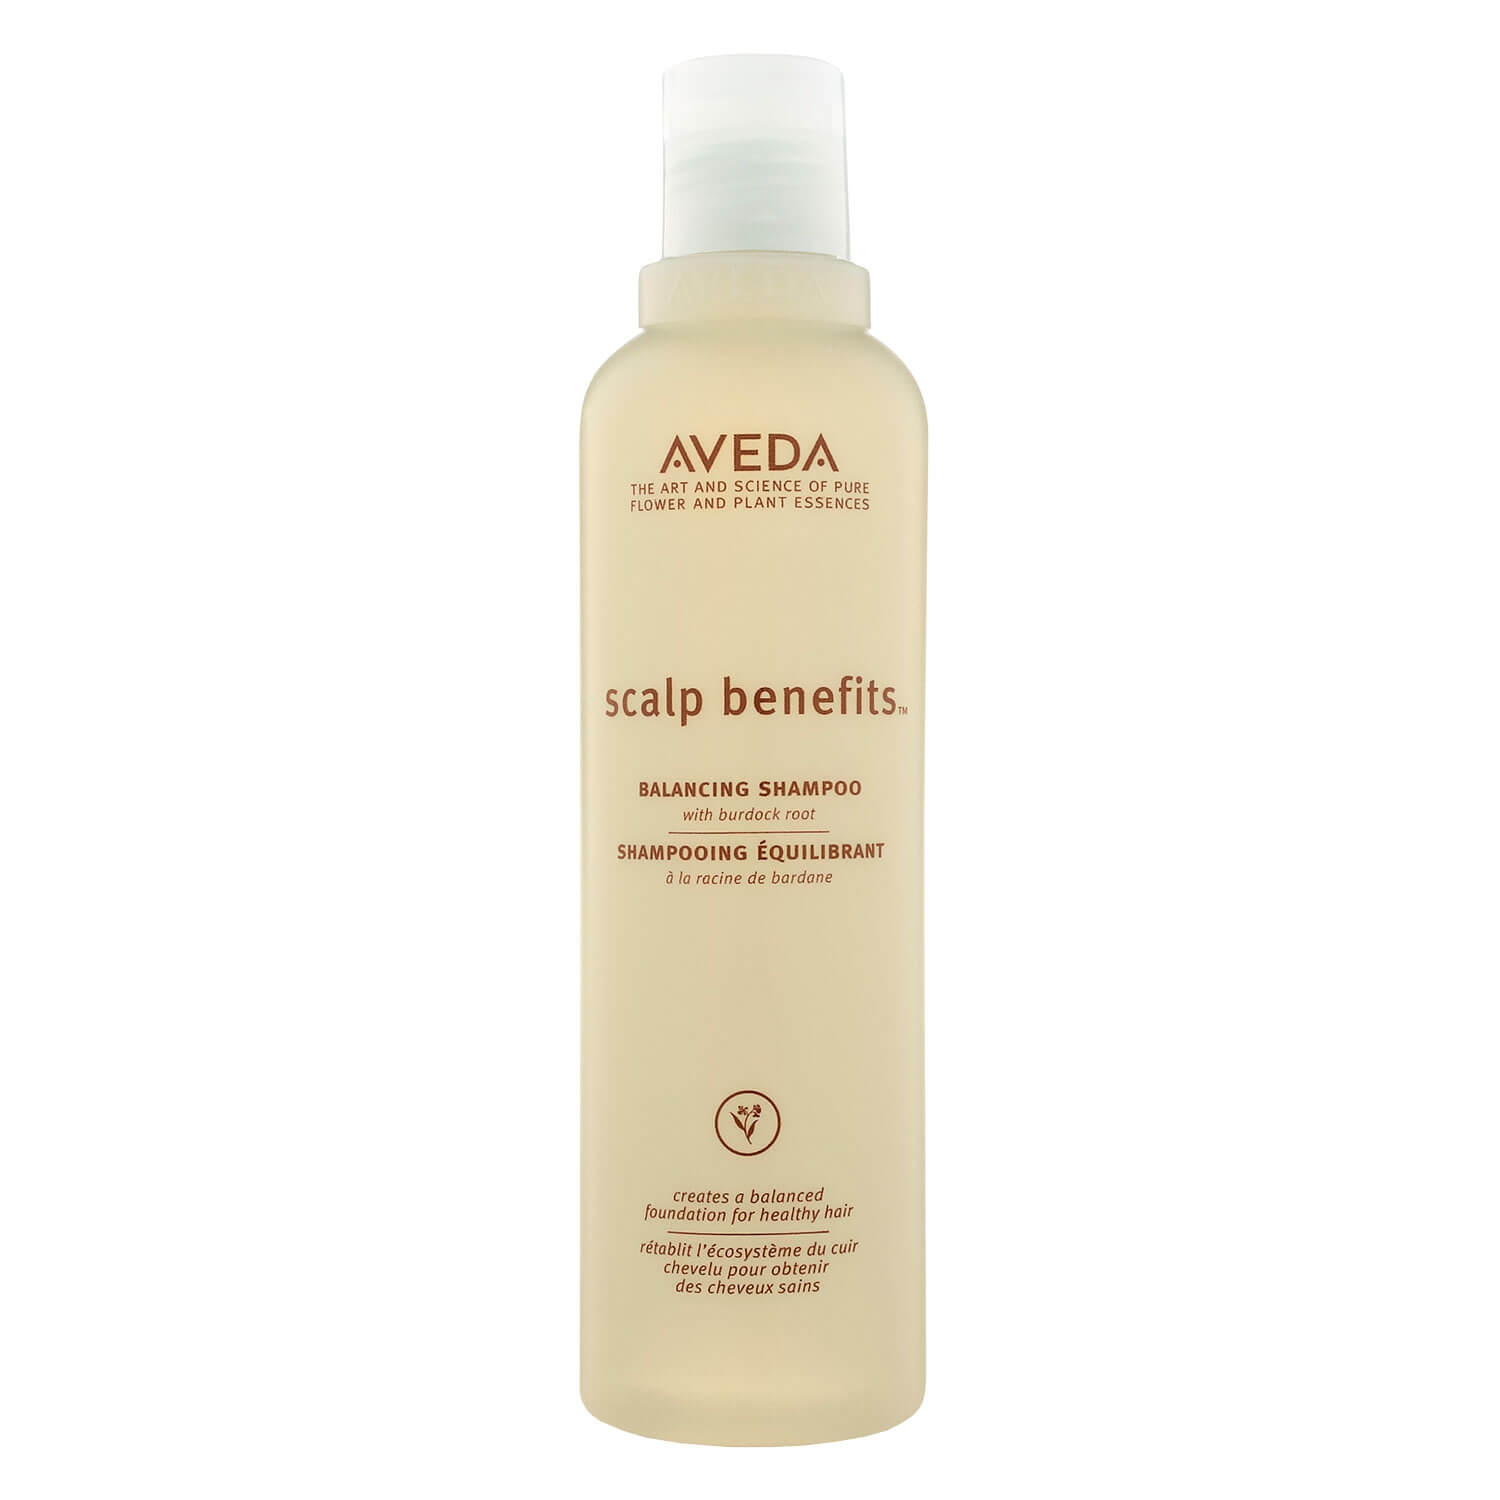 Produktbild von scalp benefits - balancing shampoo